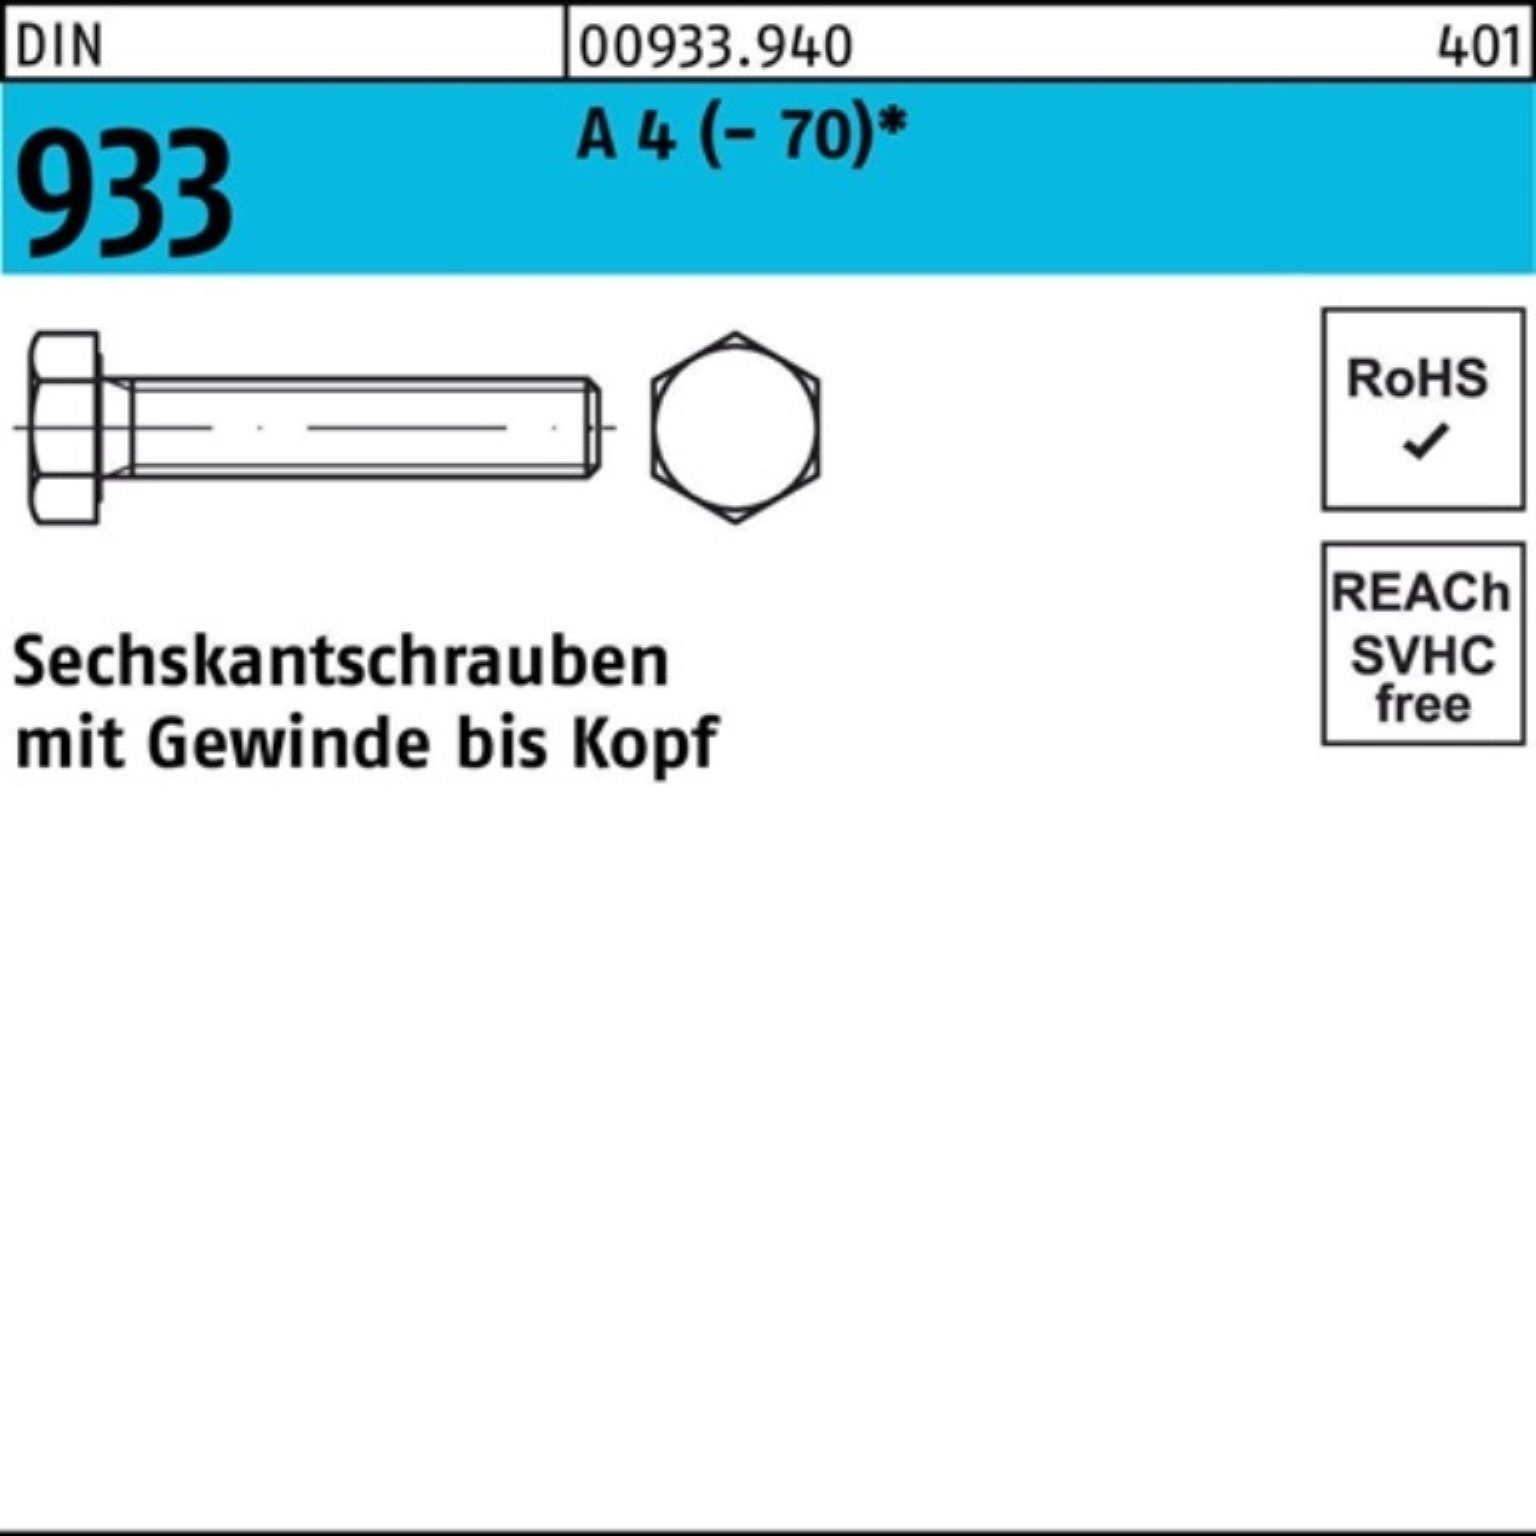 Reyher Sechskantschraube DIN VG 100er (70) 120 D M24x Sechskantschraube Stück 1 Pack 933 4 A